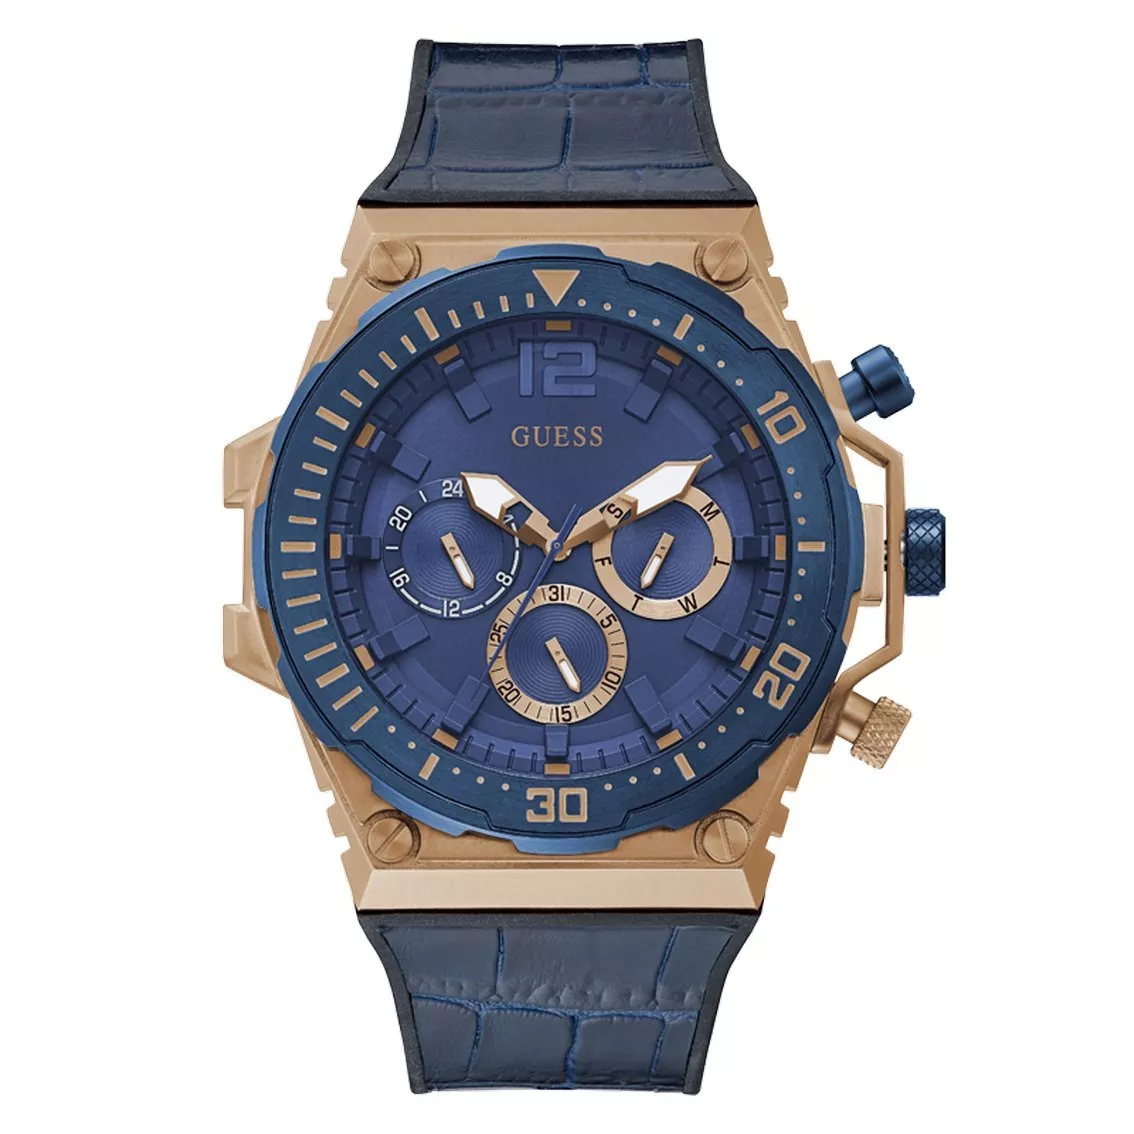 GUESS GW0326G1 Horloge Venture Chrono staal-leder rosekleurig-blauw 48 mm